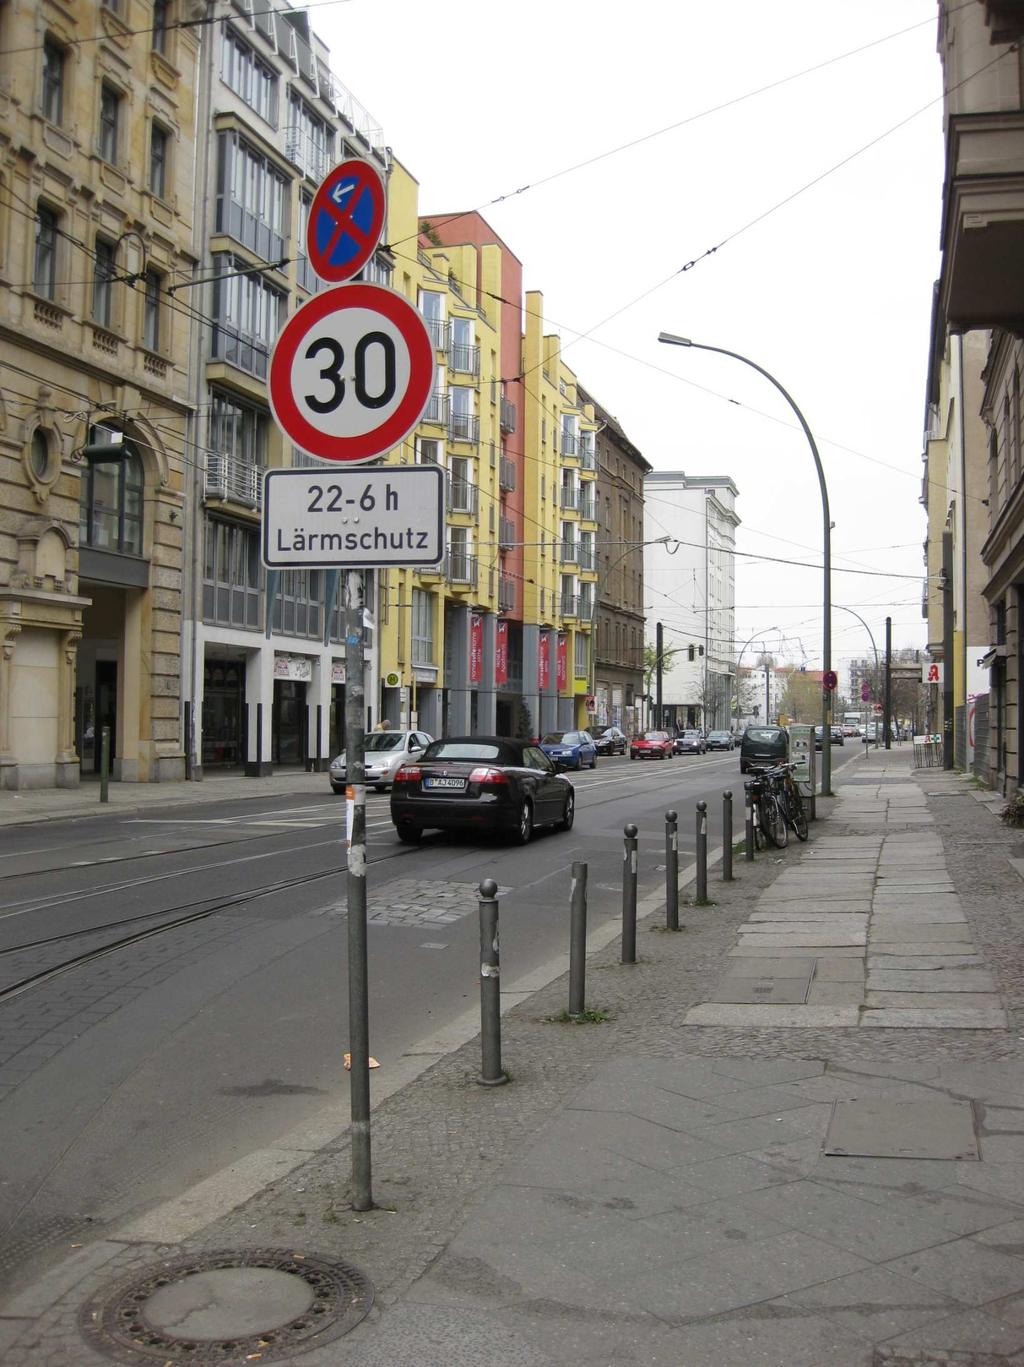 Maßnahmenkonzeption: Straßenverkehrliches Maßnahmenbeispiel für Innerortsituationen: Tempo 30 km/h (nachts) auf ausgewählten Hauptverkehrsstraßen - entspricht nicht der Ausweisung von Tempo 30 -Zonen